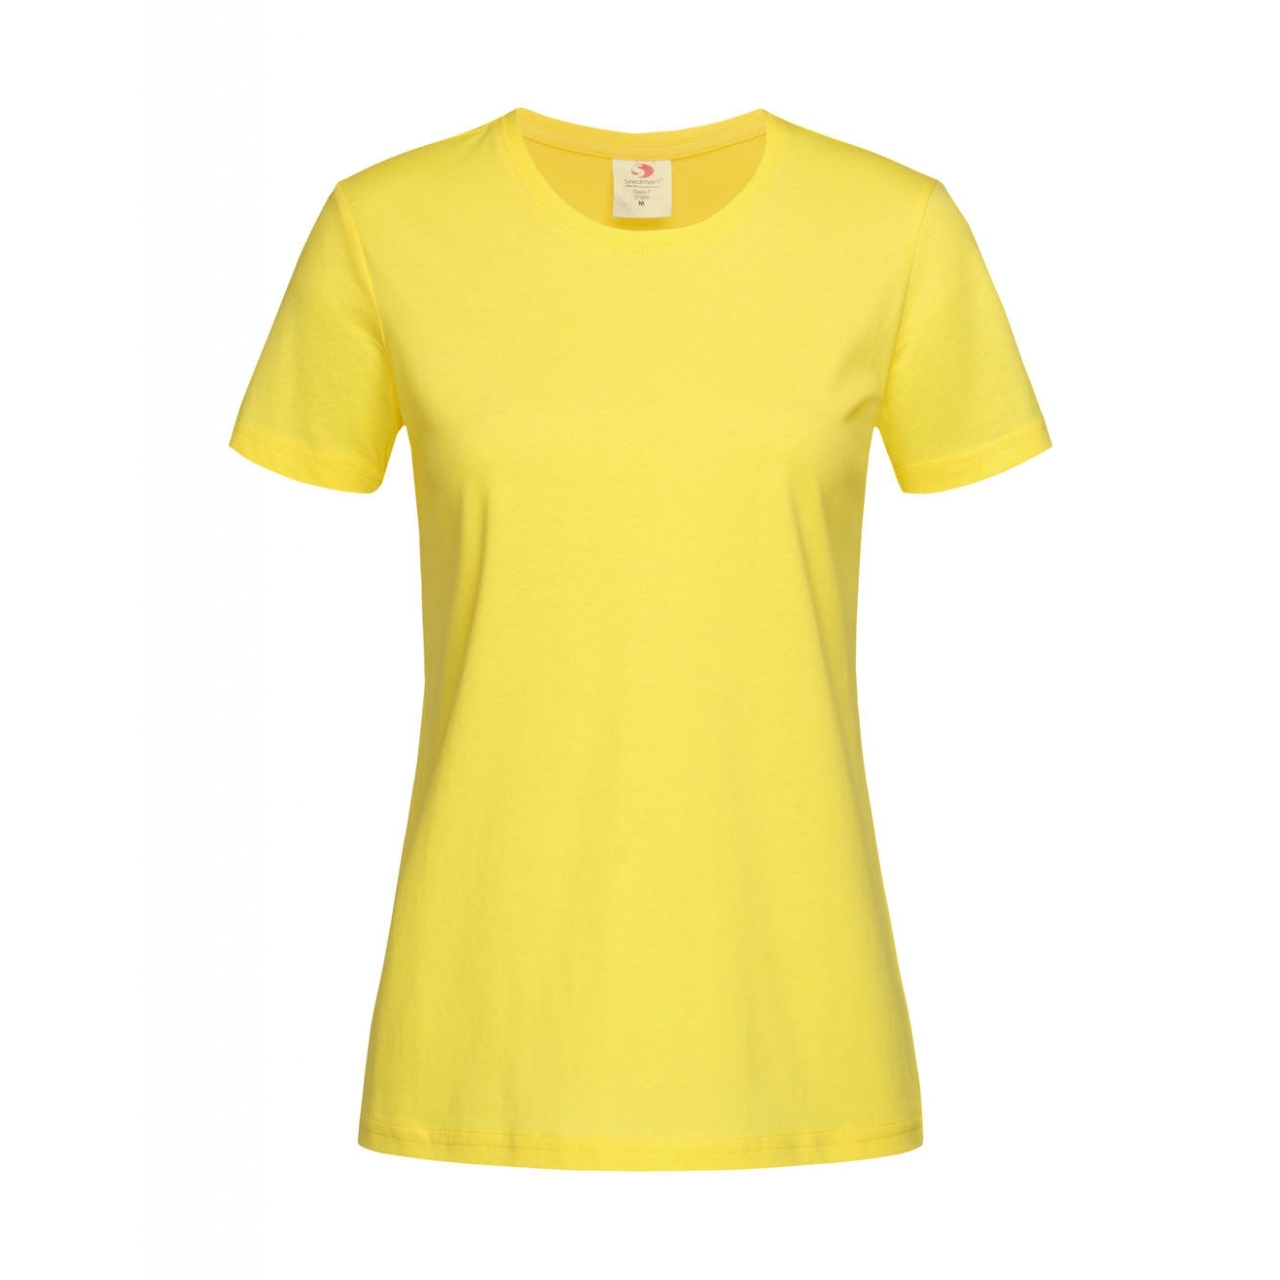 Tričko dámské Stedman Fitted s kulatým výstřihem - žluté, M